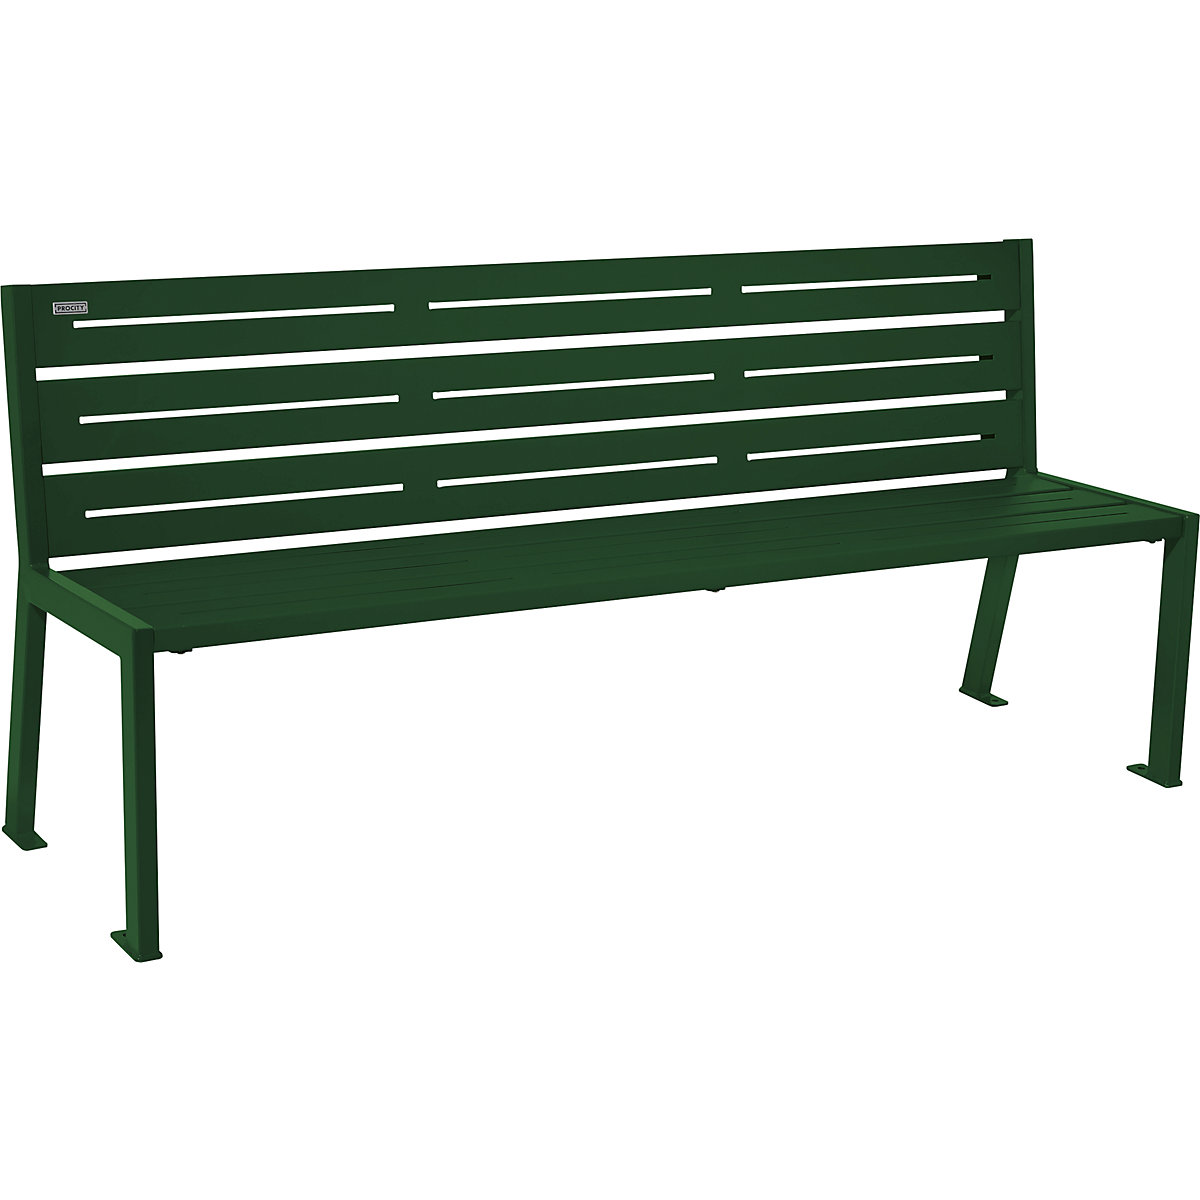 Ocelová parková lavička SILAOS® – PROCITY, délka 1800 mm, mechová zelená, s opěradlem-3